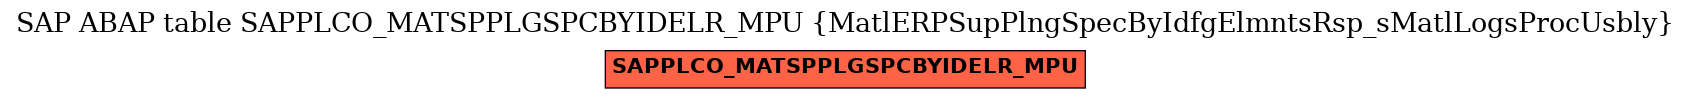 E-R Diagram for table SAPPLCO_MATSPPLGSPCBYIDELR_MPU (MatlERPSupPlngSpecByIdfgElmntsRsp_sMatlLogsProcUsbly)